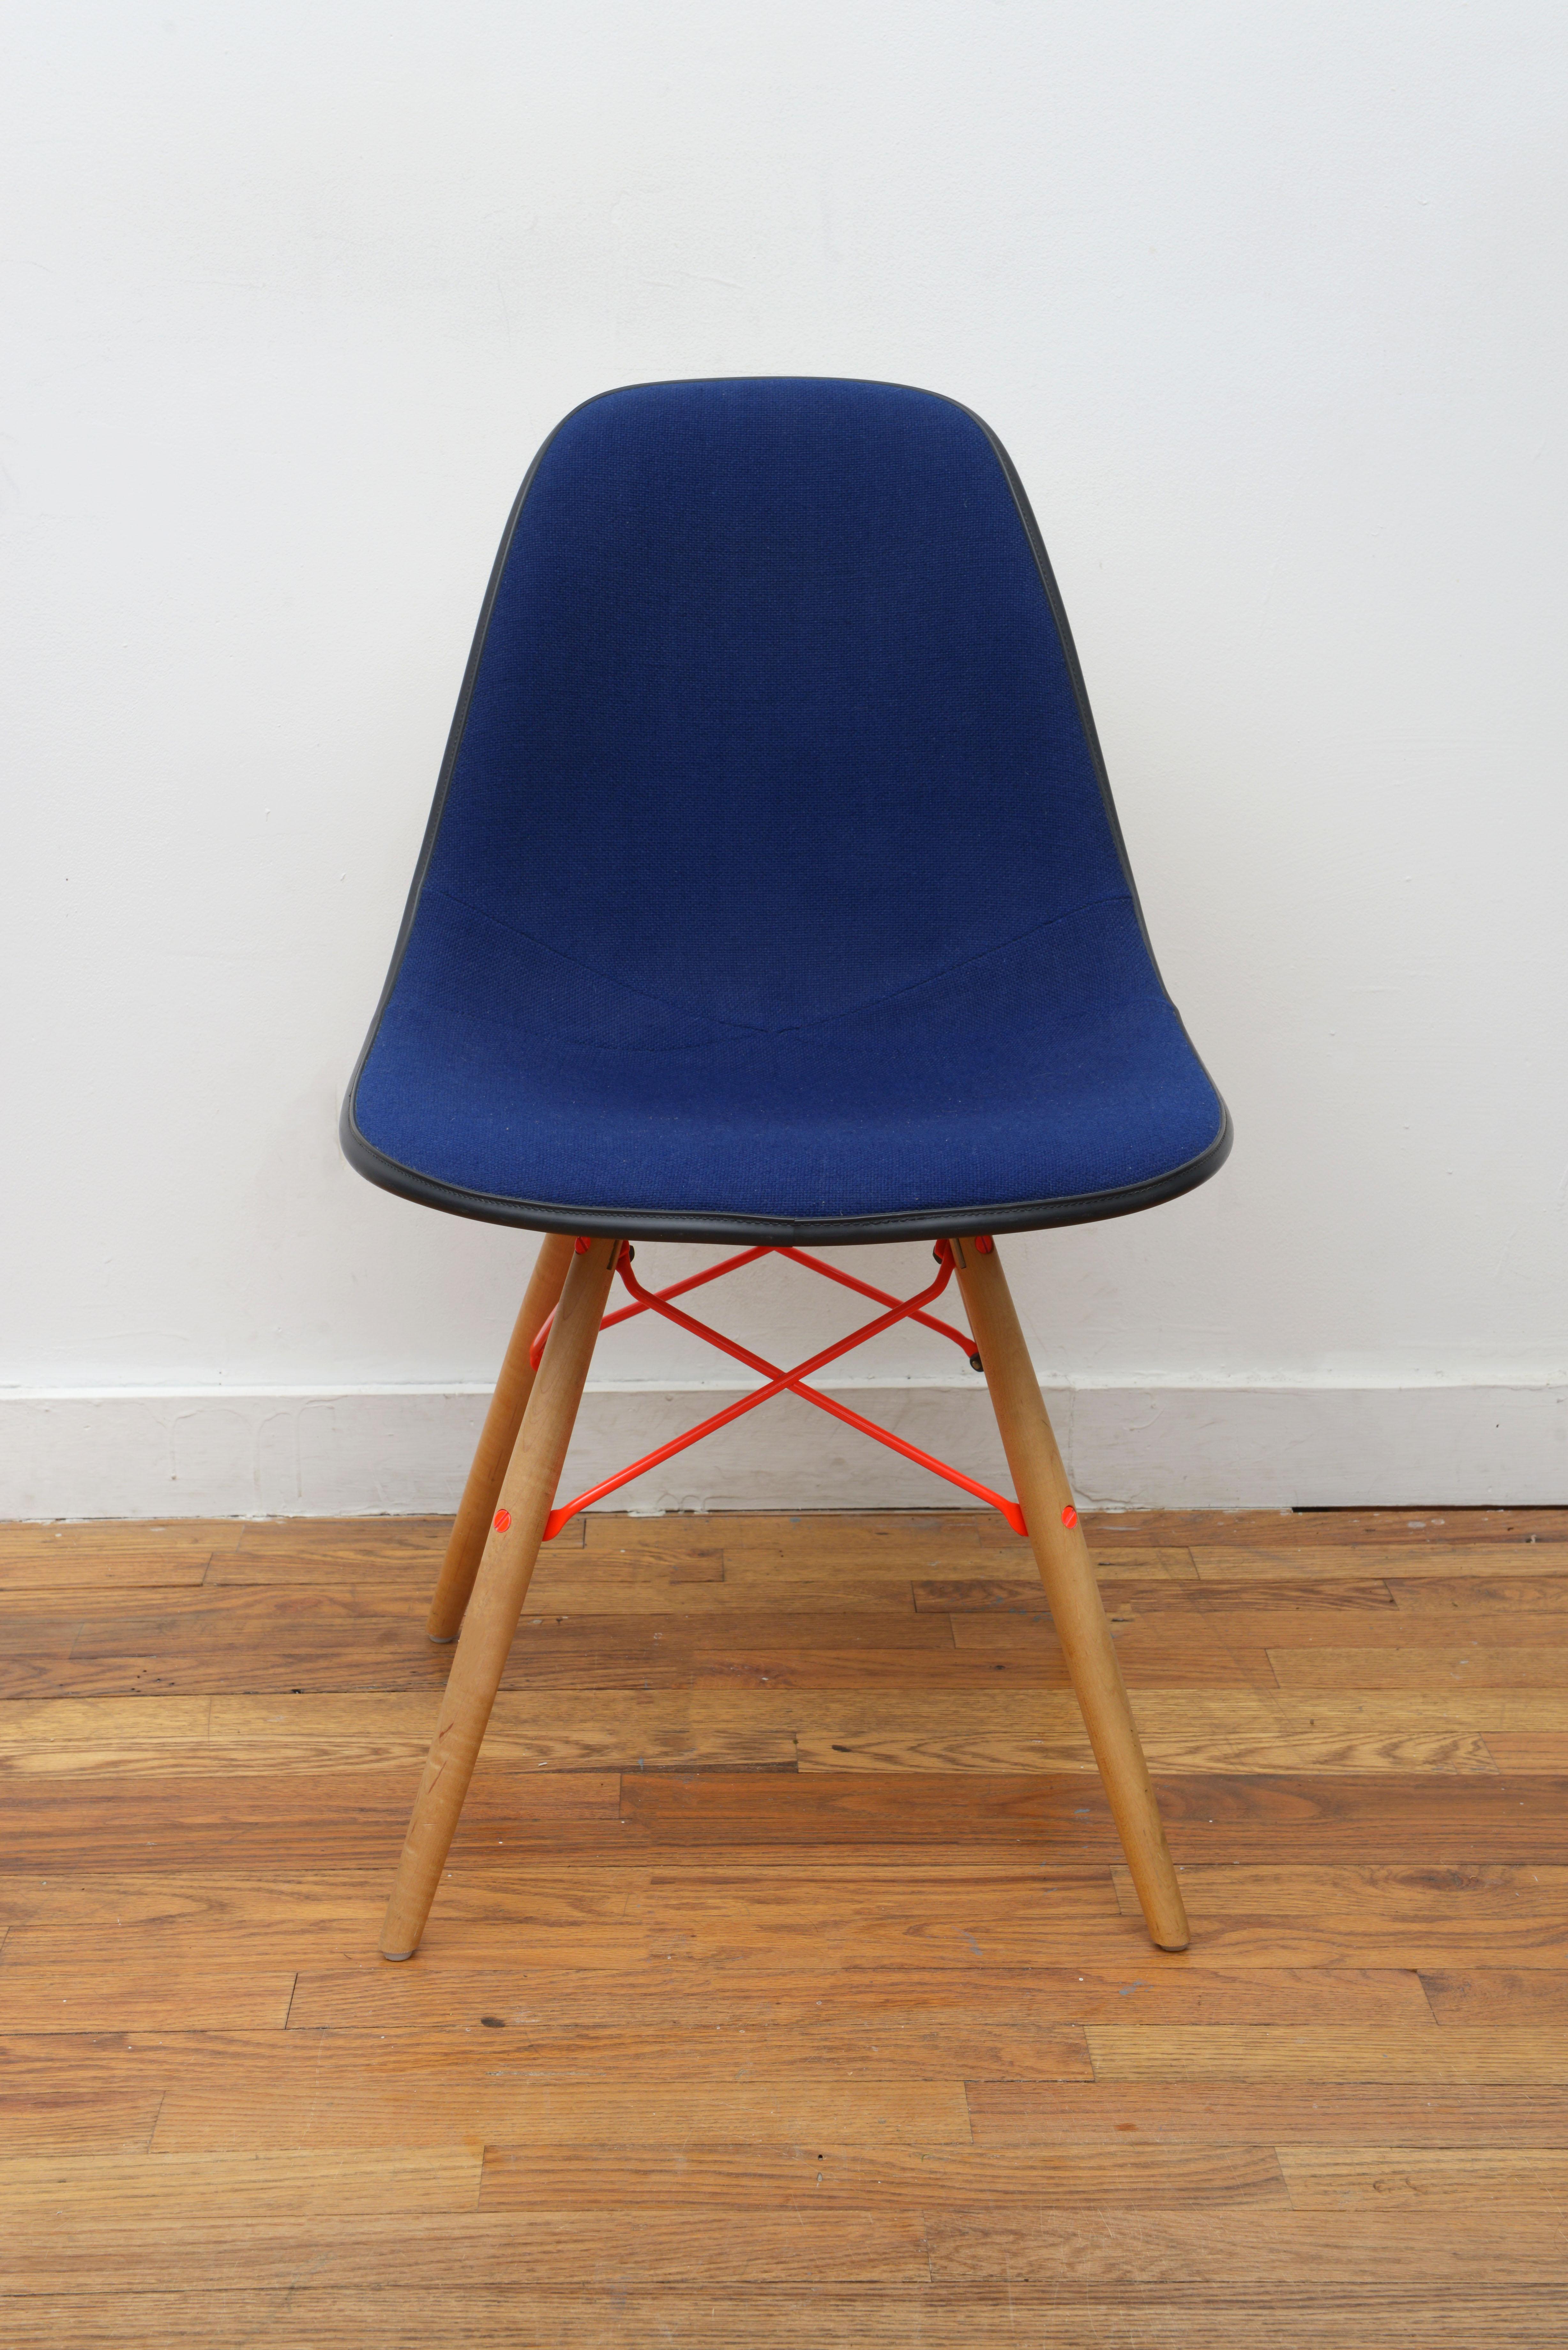 La combinaison de couleurs de cette chaise coquille DSW bleue rembourrée avec des piétements orange néon est tout simplement incroyable ! Conçu par Charles et Ray Eames pour Herman Miller dans les années 1950 (Signé avec le logo Herman Miller sur le